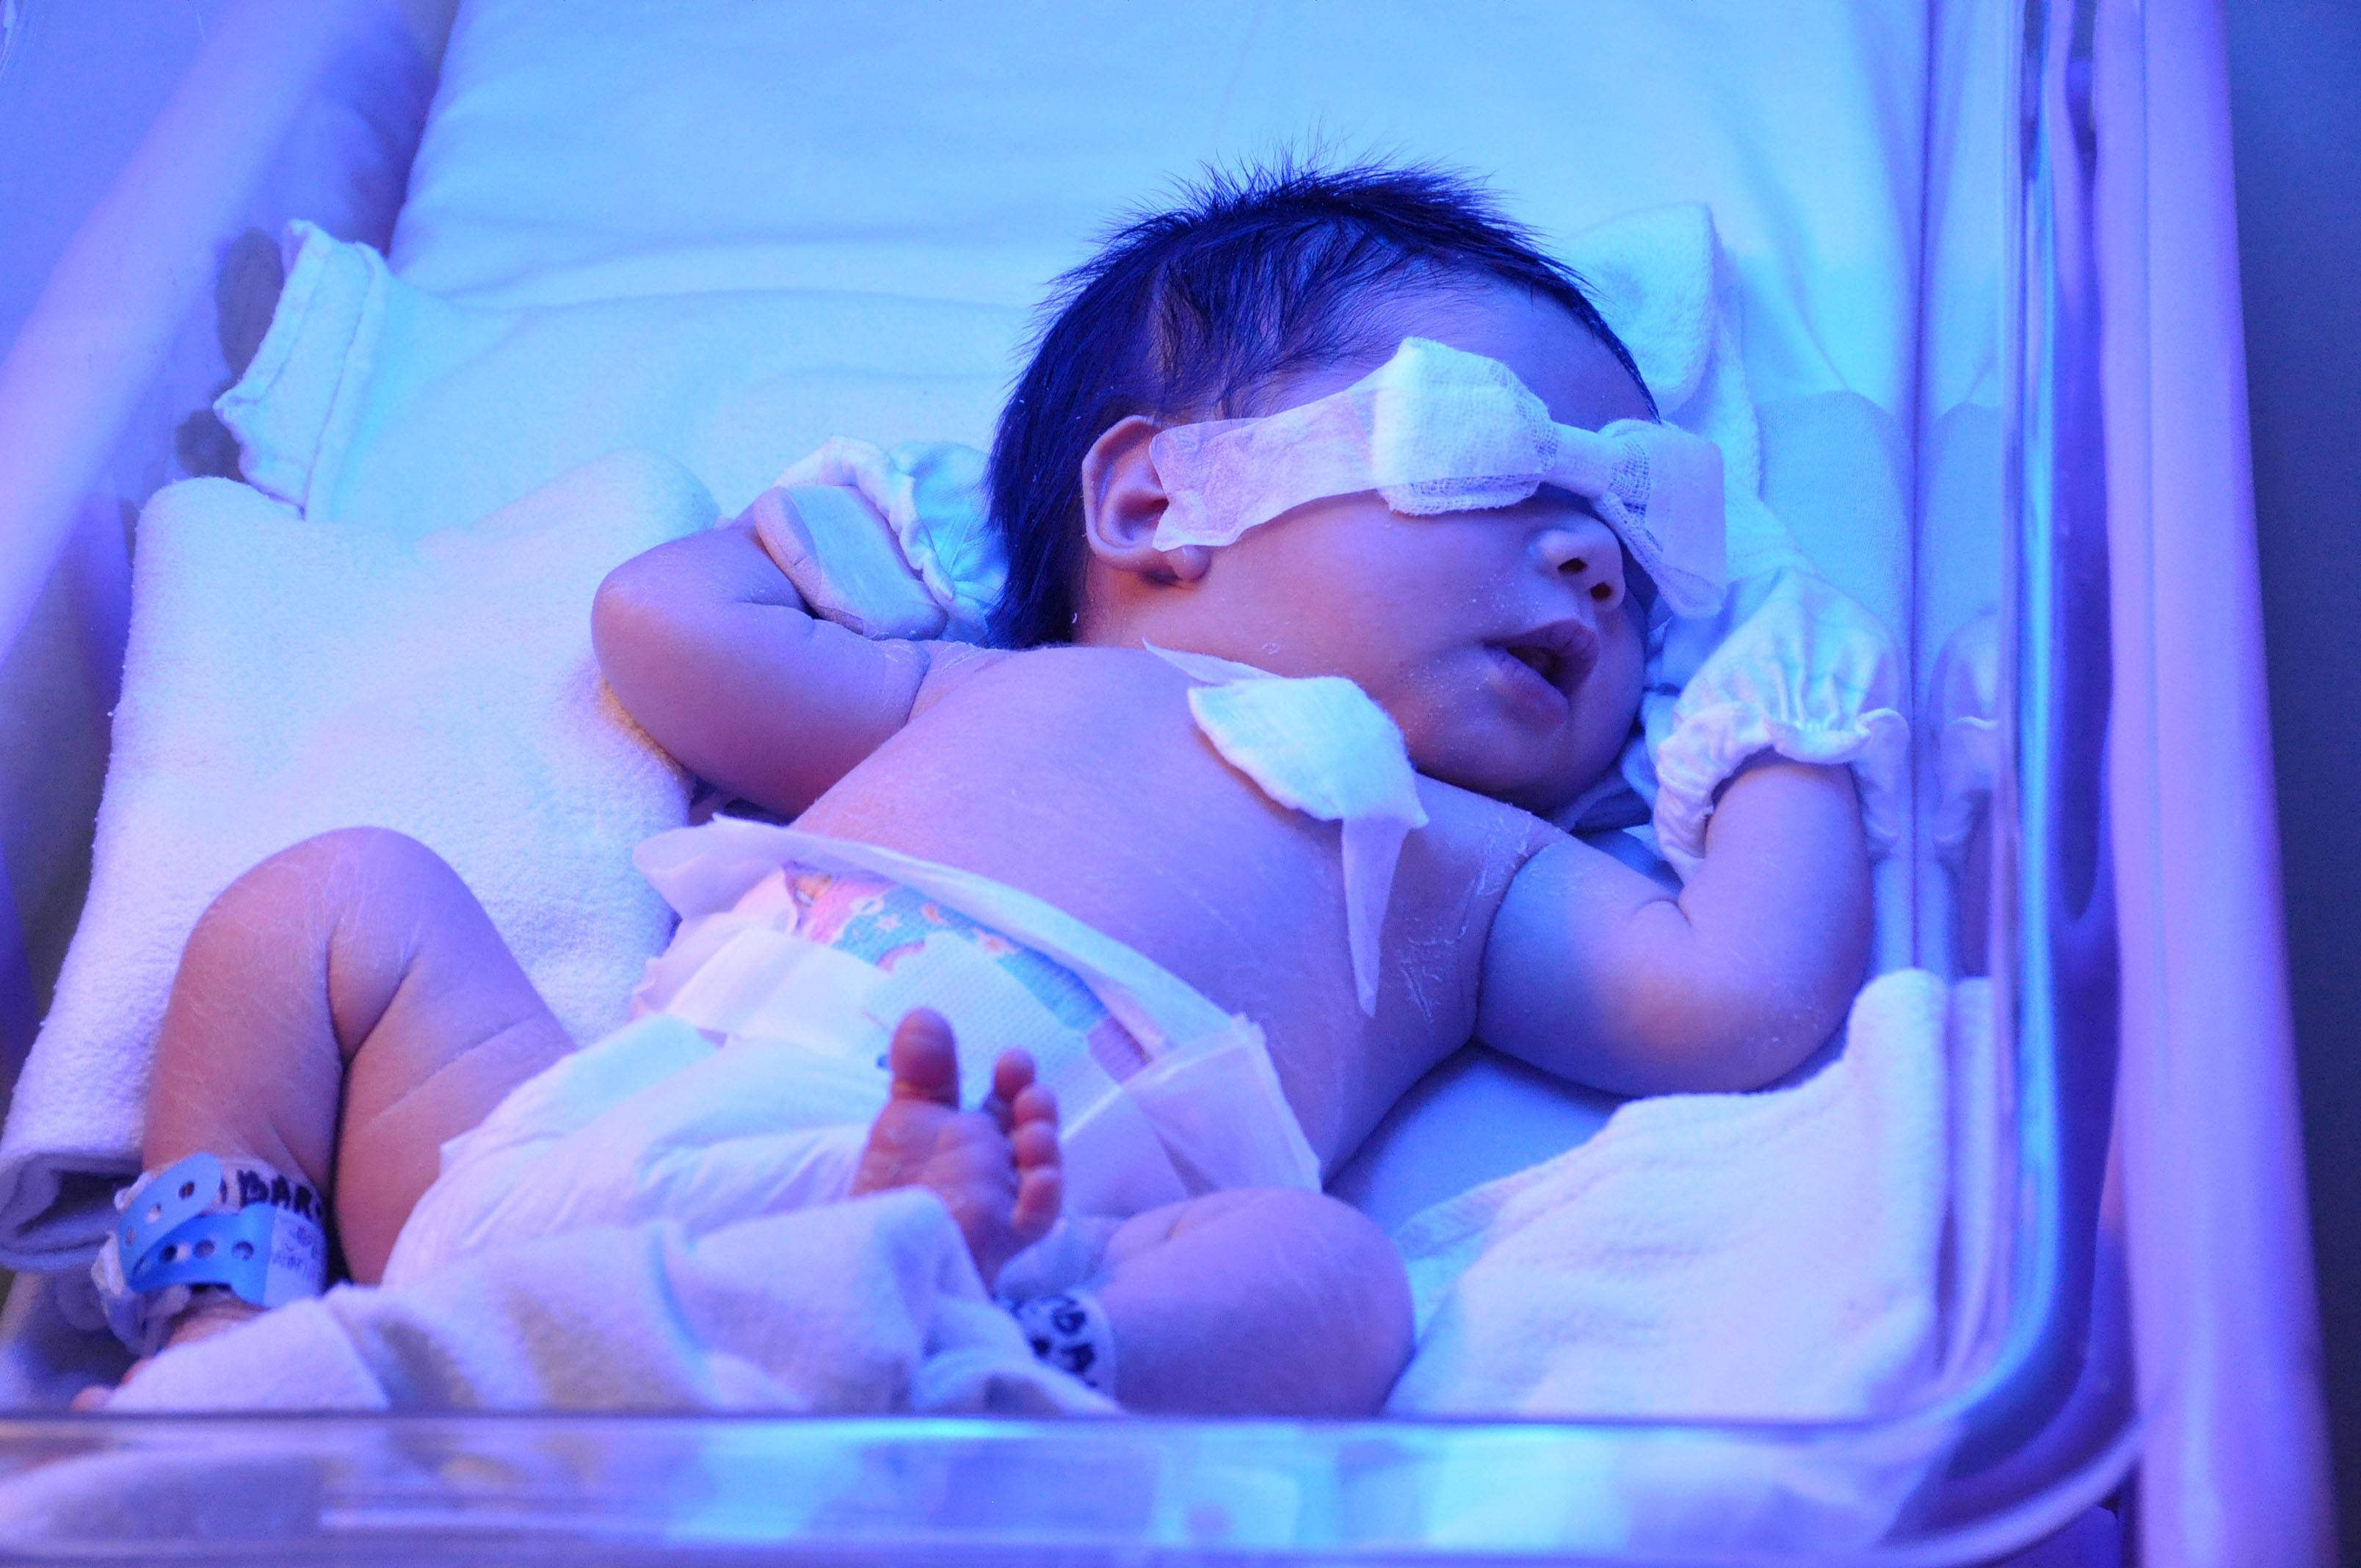 Желтушка у новорожденных отзывы. Желтушка у новорожденных фототерапия. Гипербилирубинемия желтуха новорожденных. Новорожденных под лампой отжельухи. Лампа для новорожденных от желтушки в роддоме.